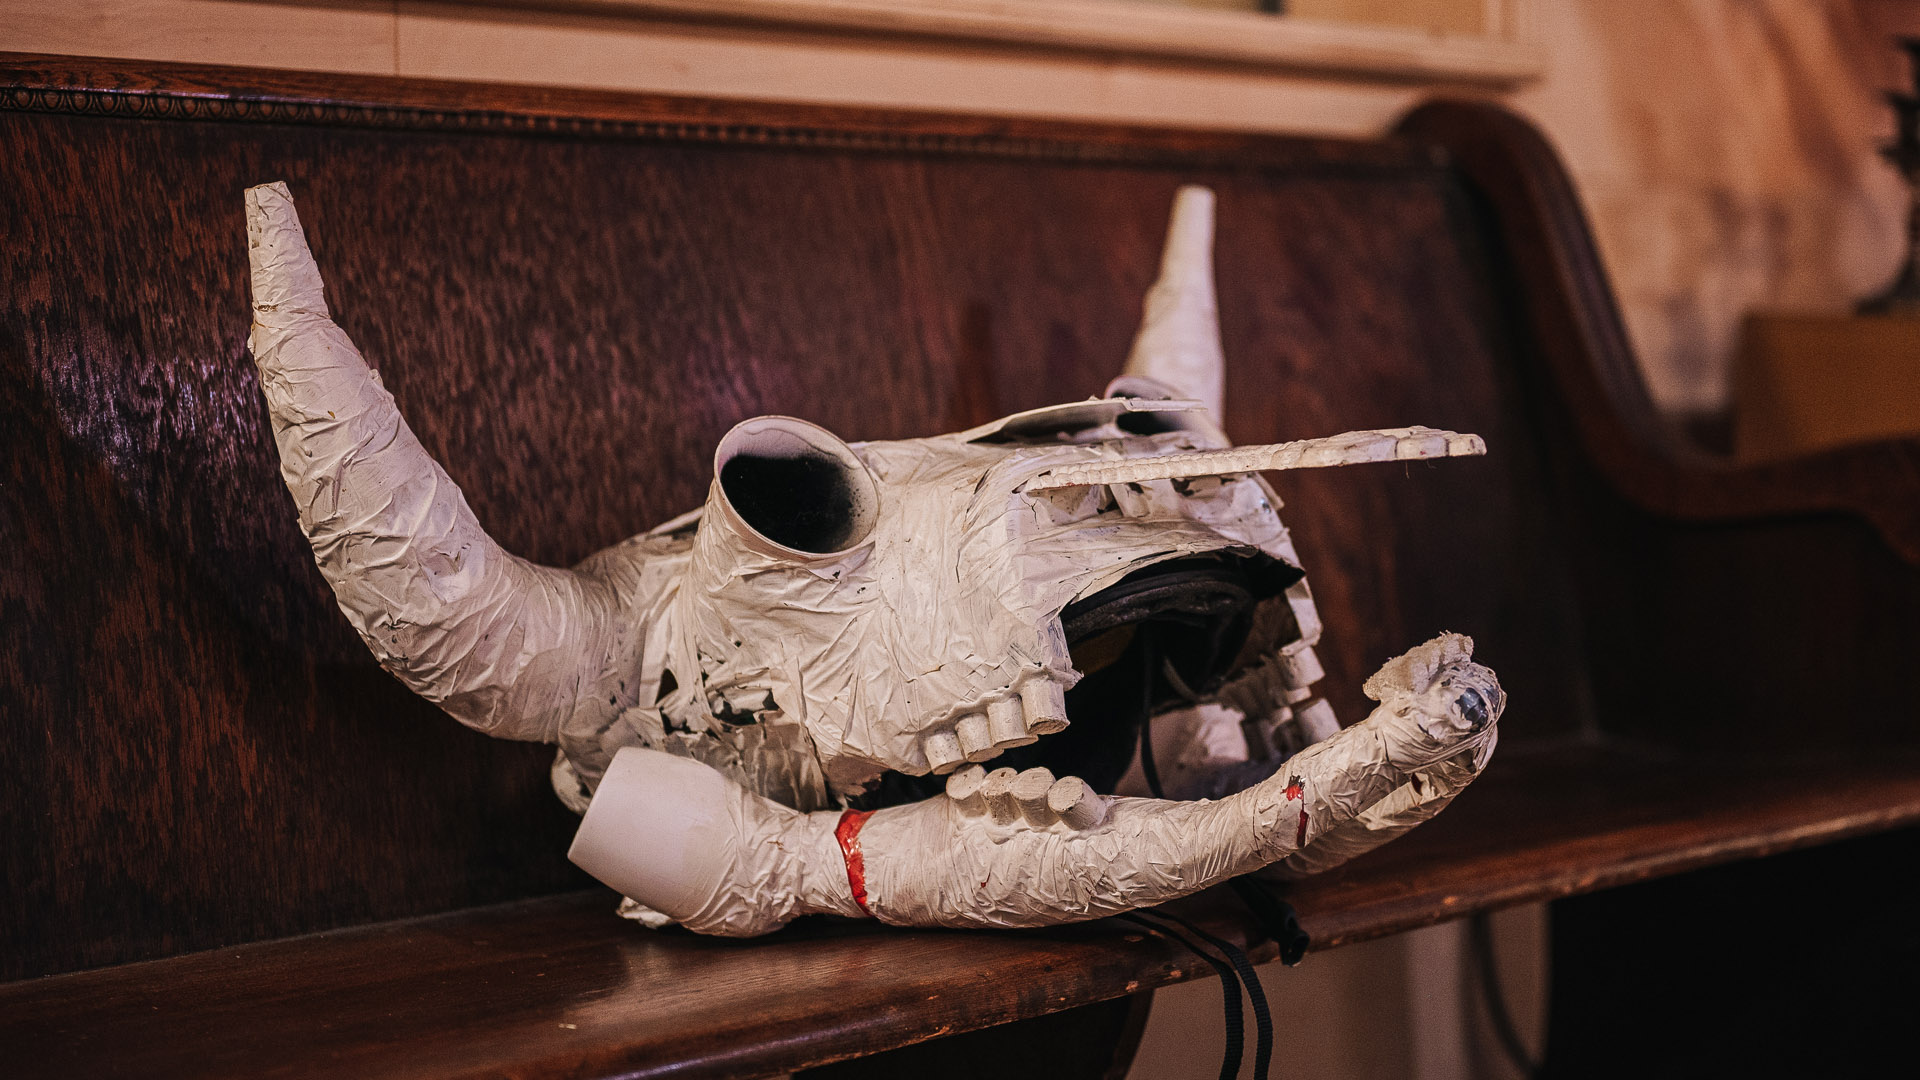 Paper mache bull skull sitting on a pew.